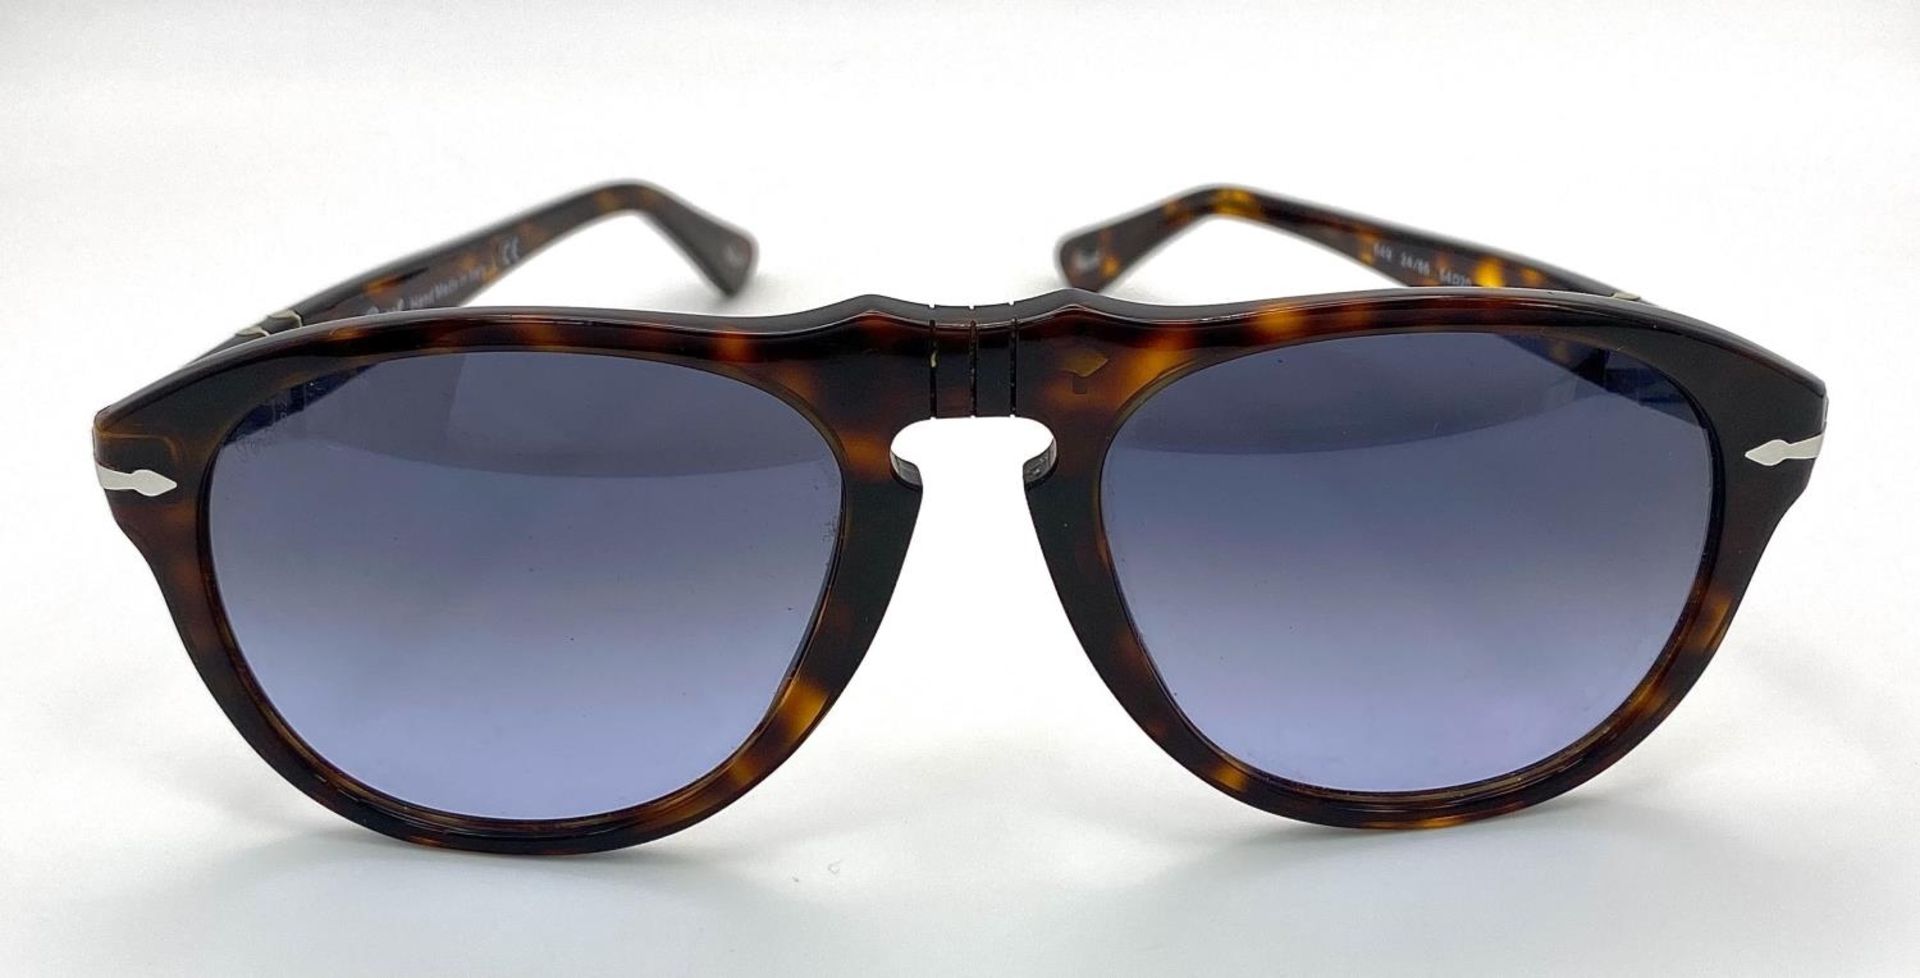 A Pair of Designer Persol Sunglasses.